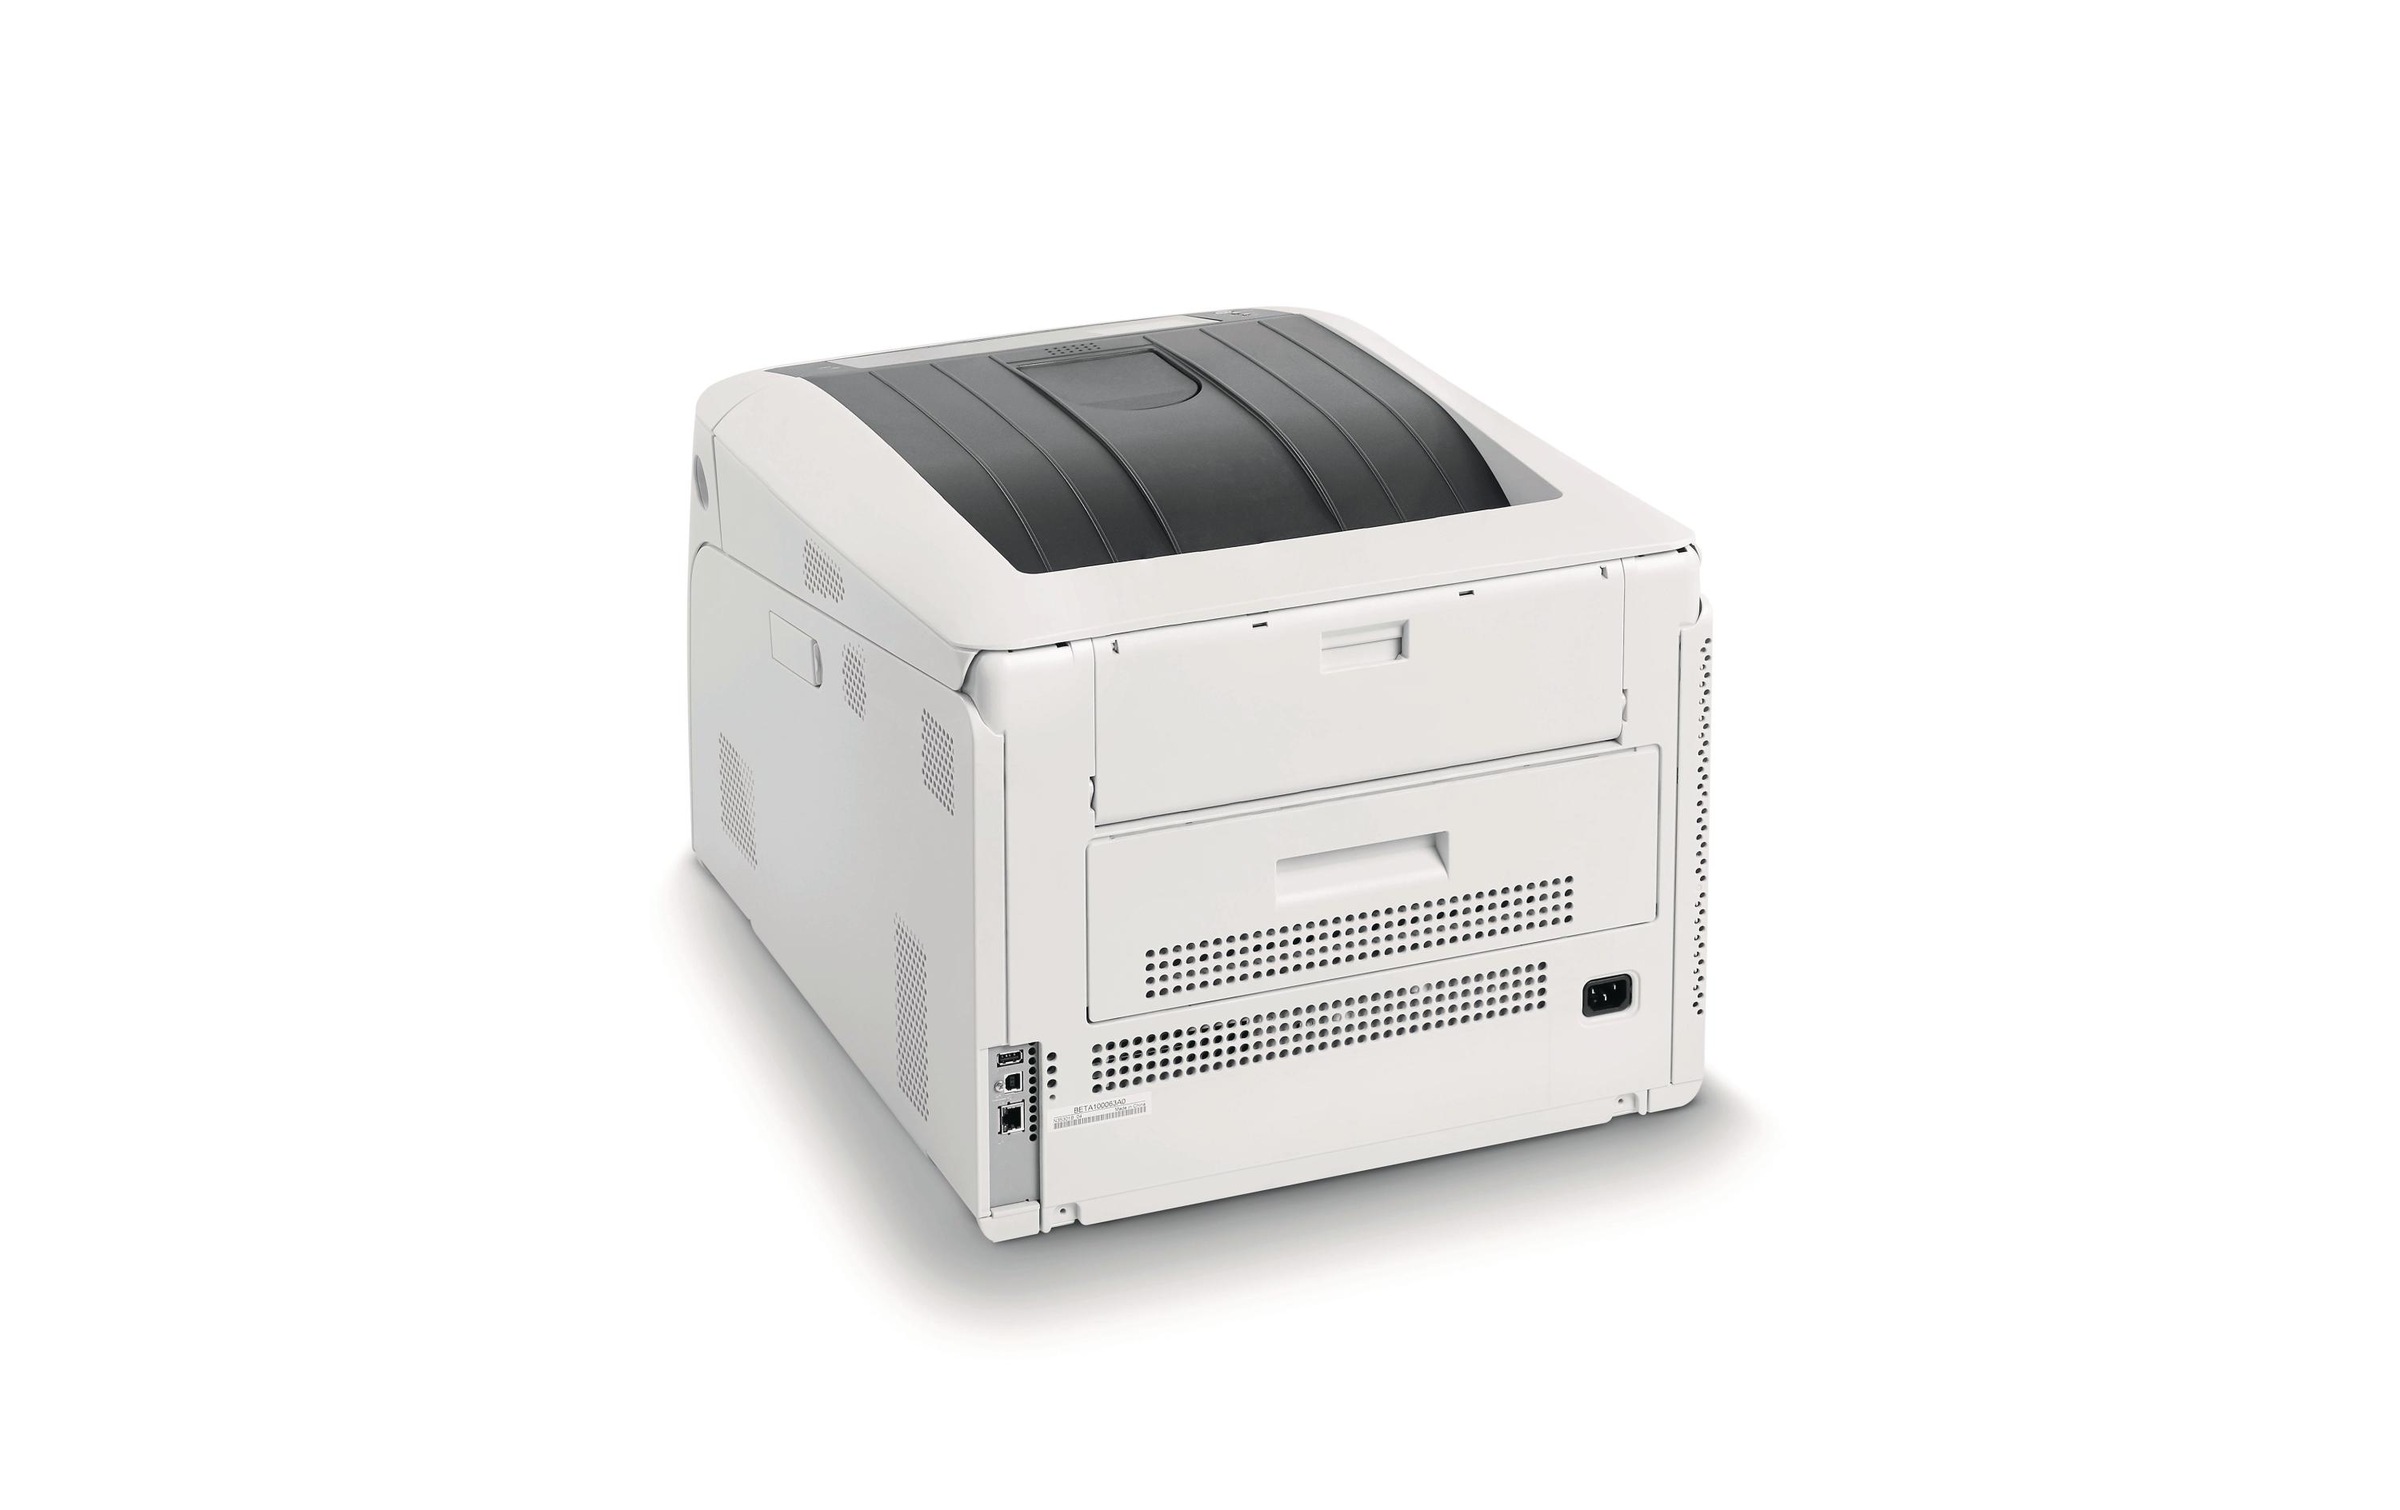 OKI Laserdrucker